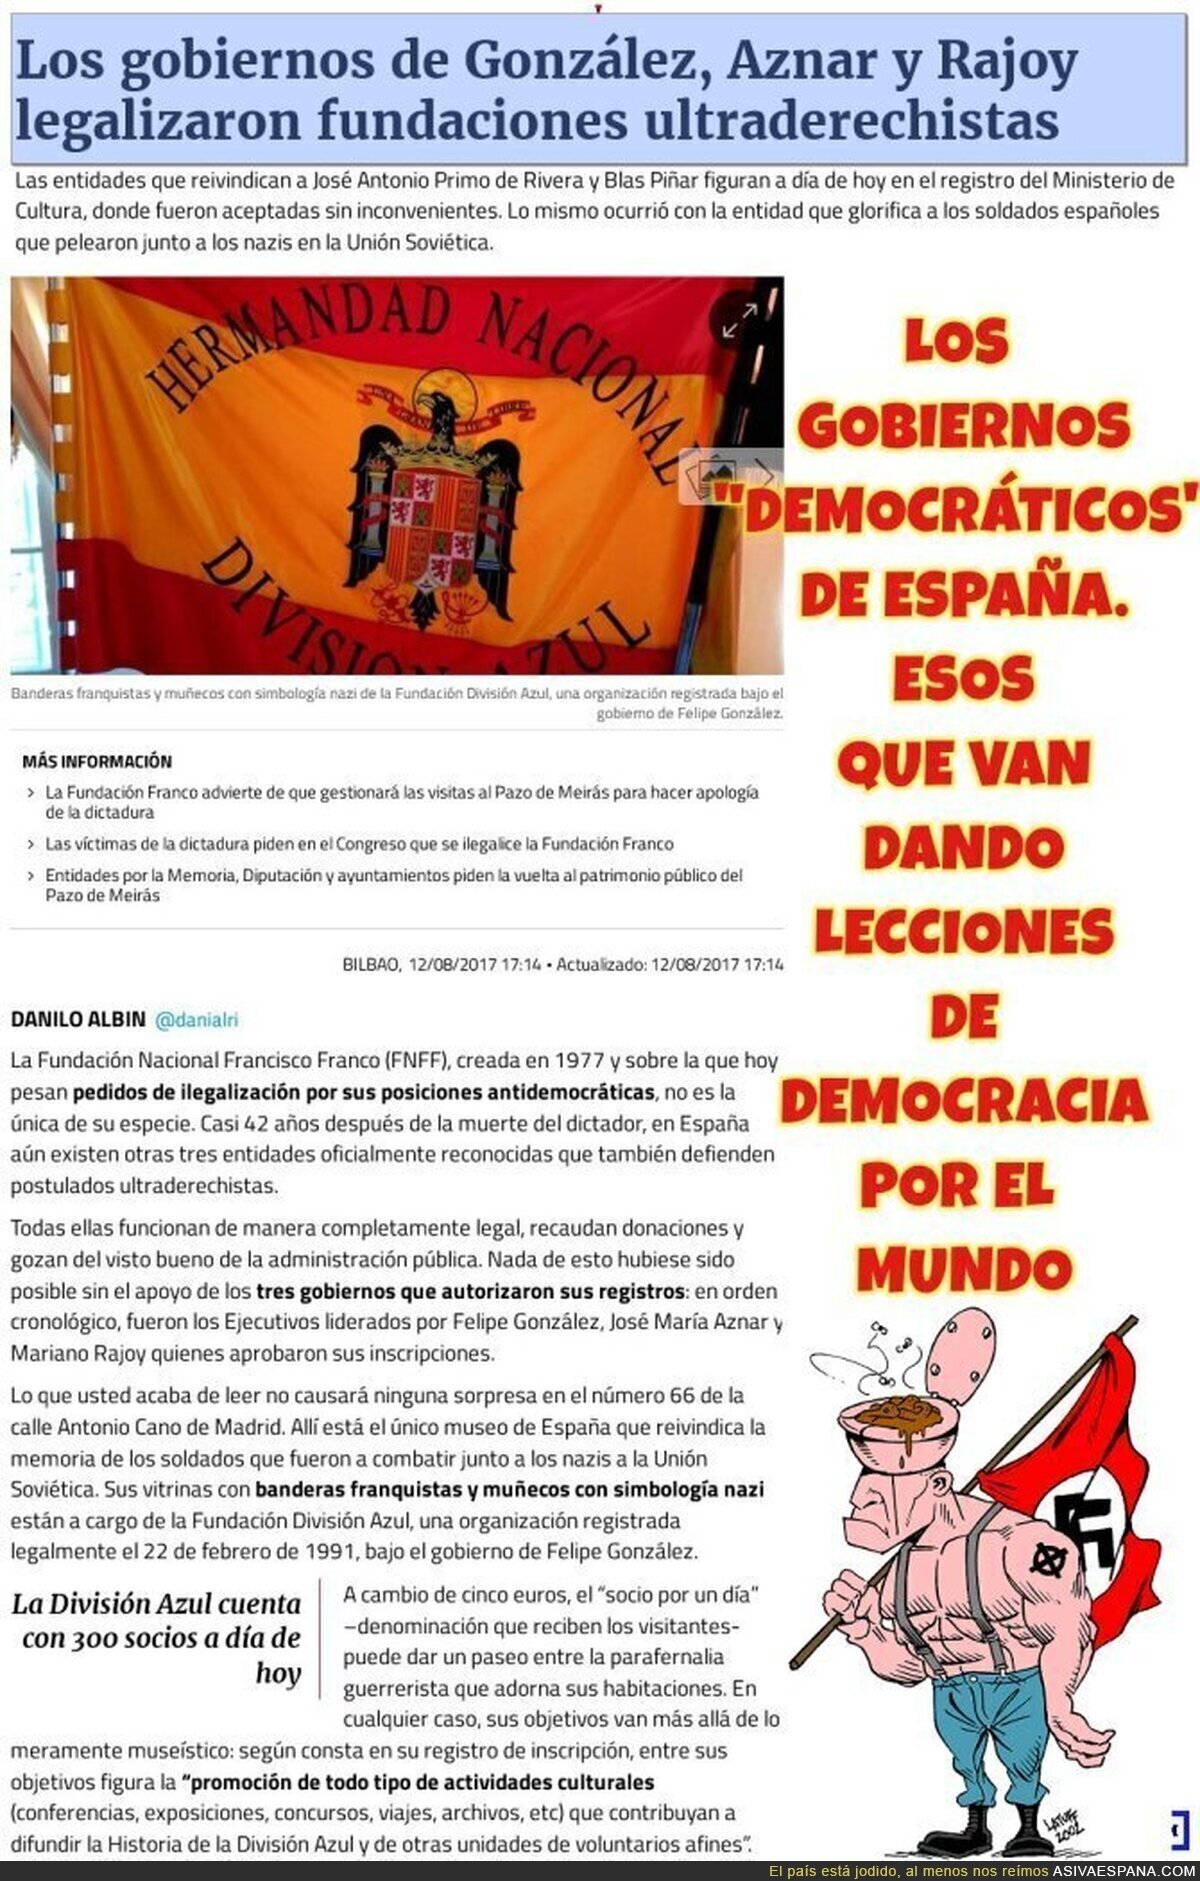 La "Democracia" en Españazuela